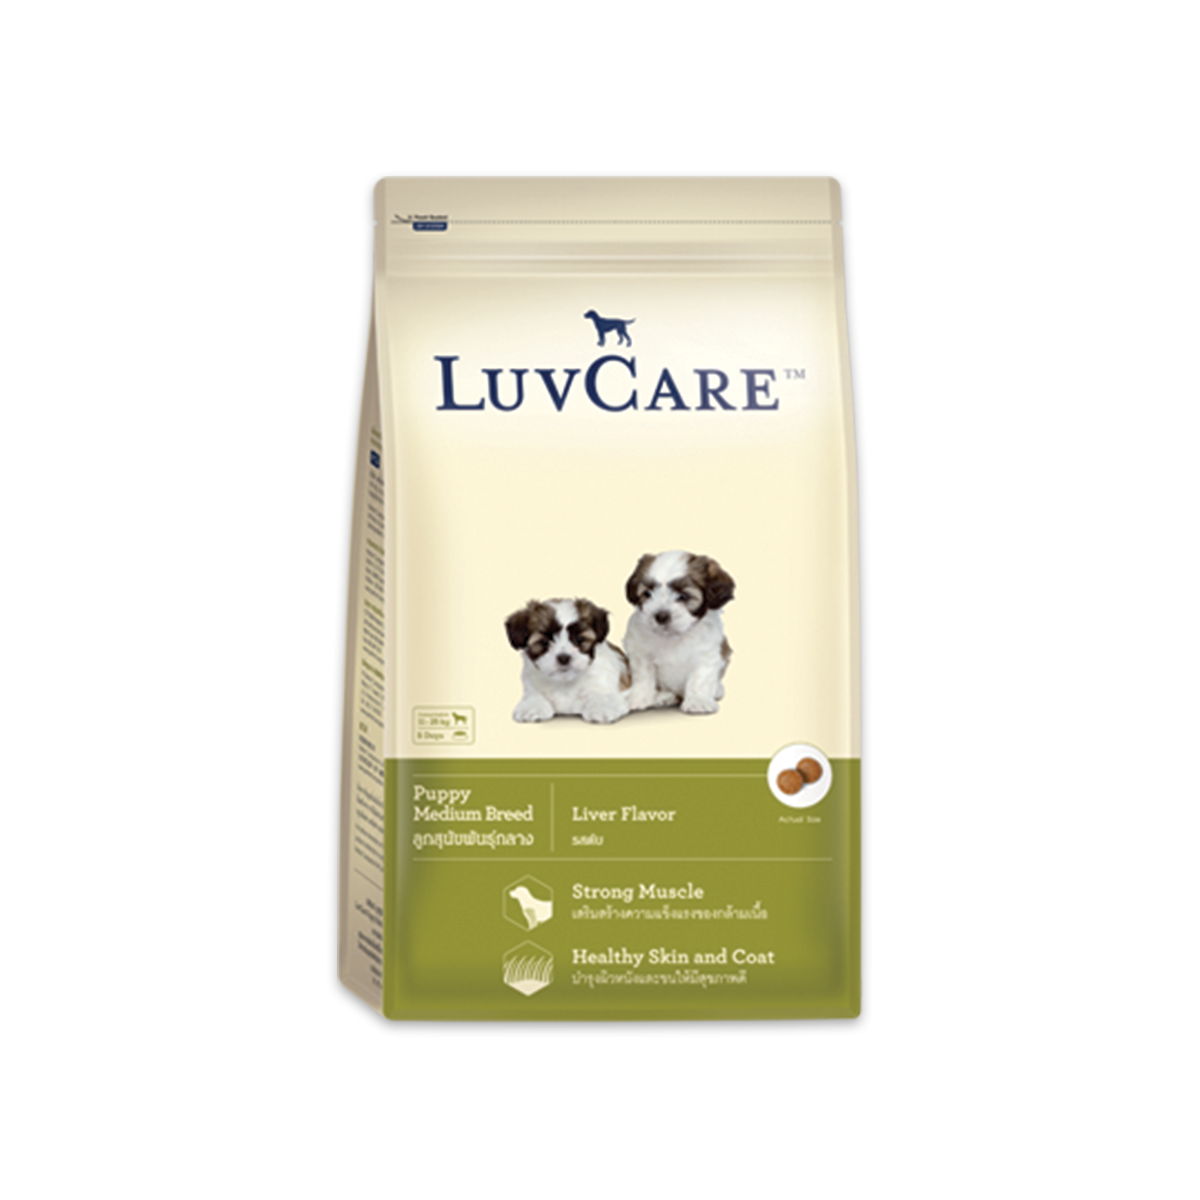 LuvCare เลิฟแคร์ อาหารสุนัขสำหรับลูกสุนัข พันธุ์กลาง